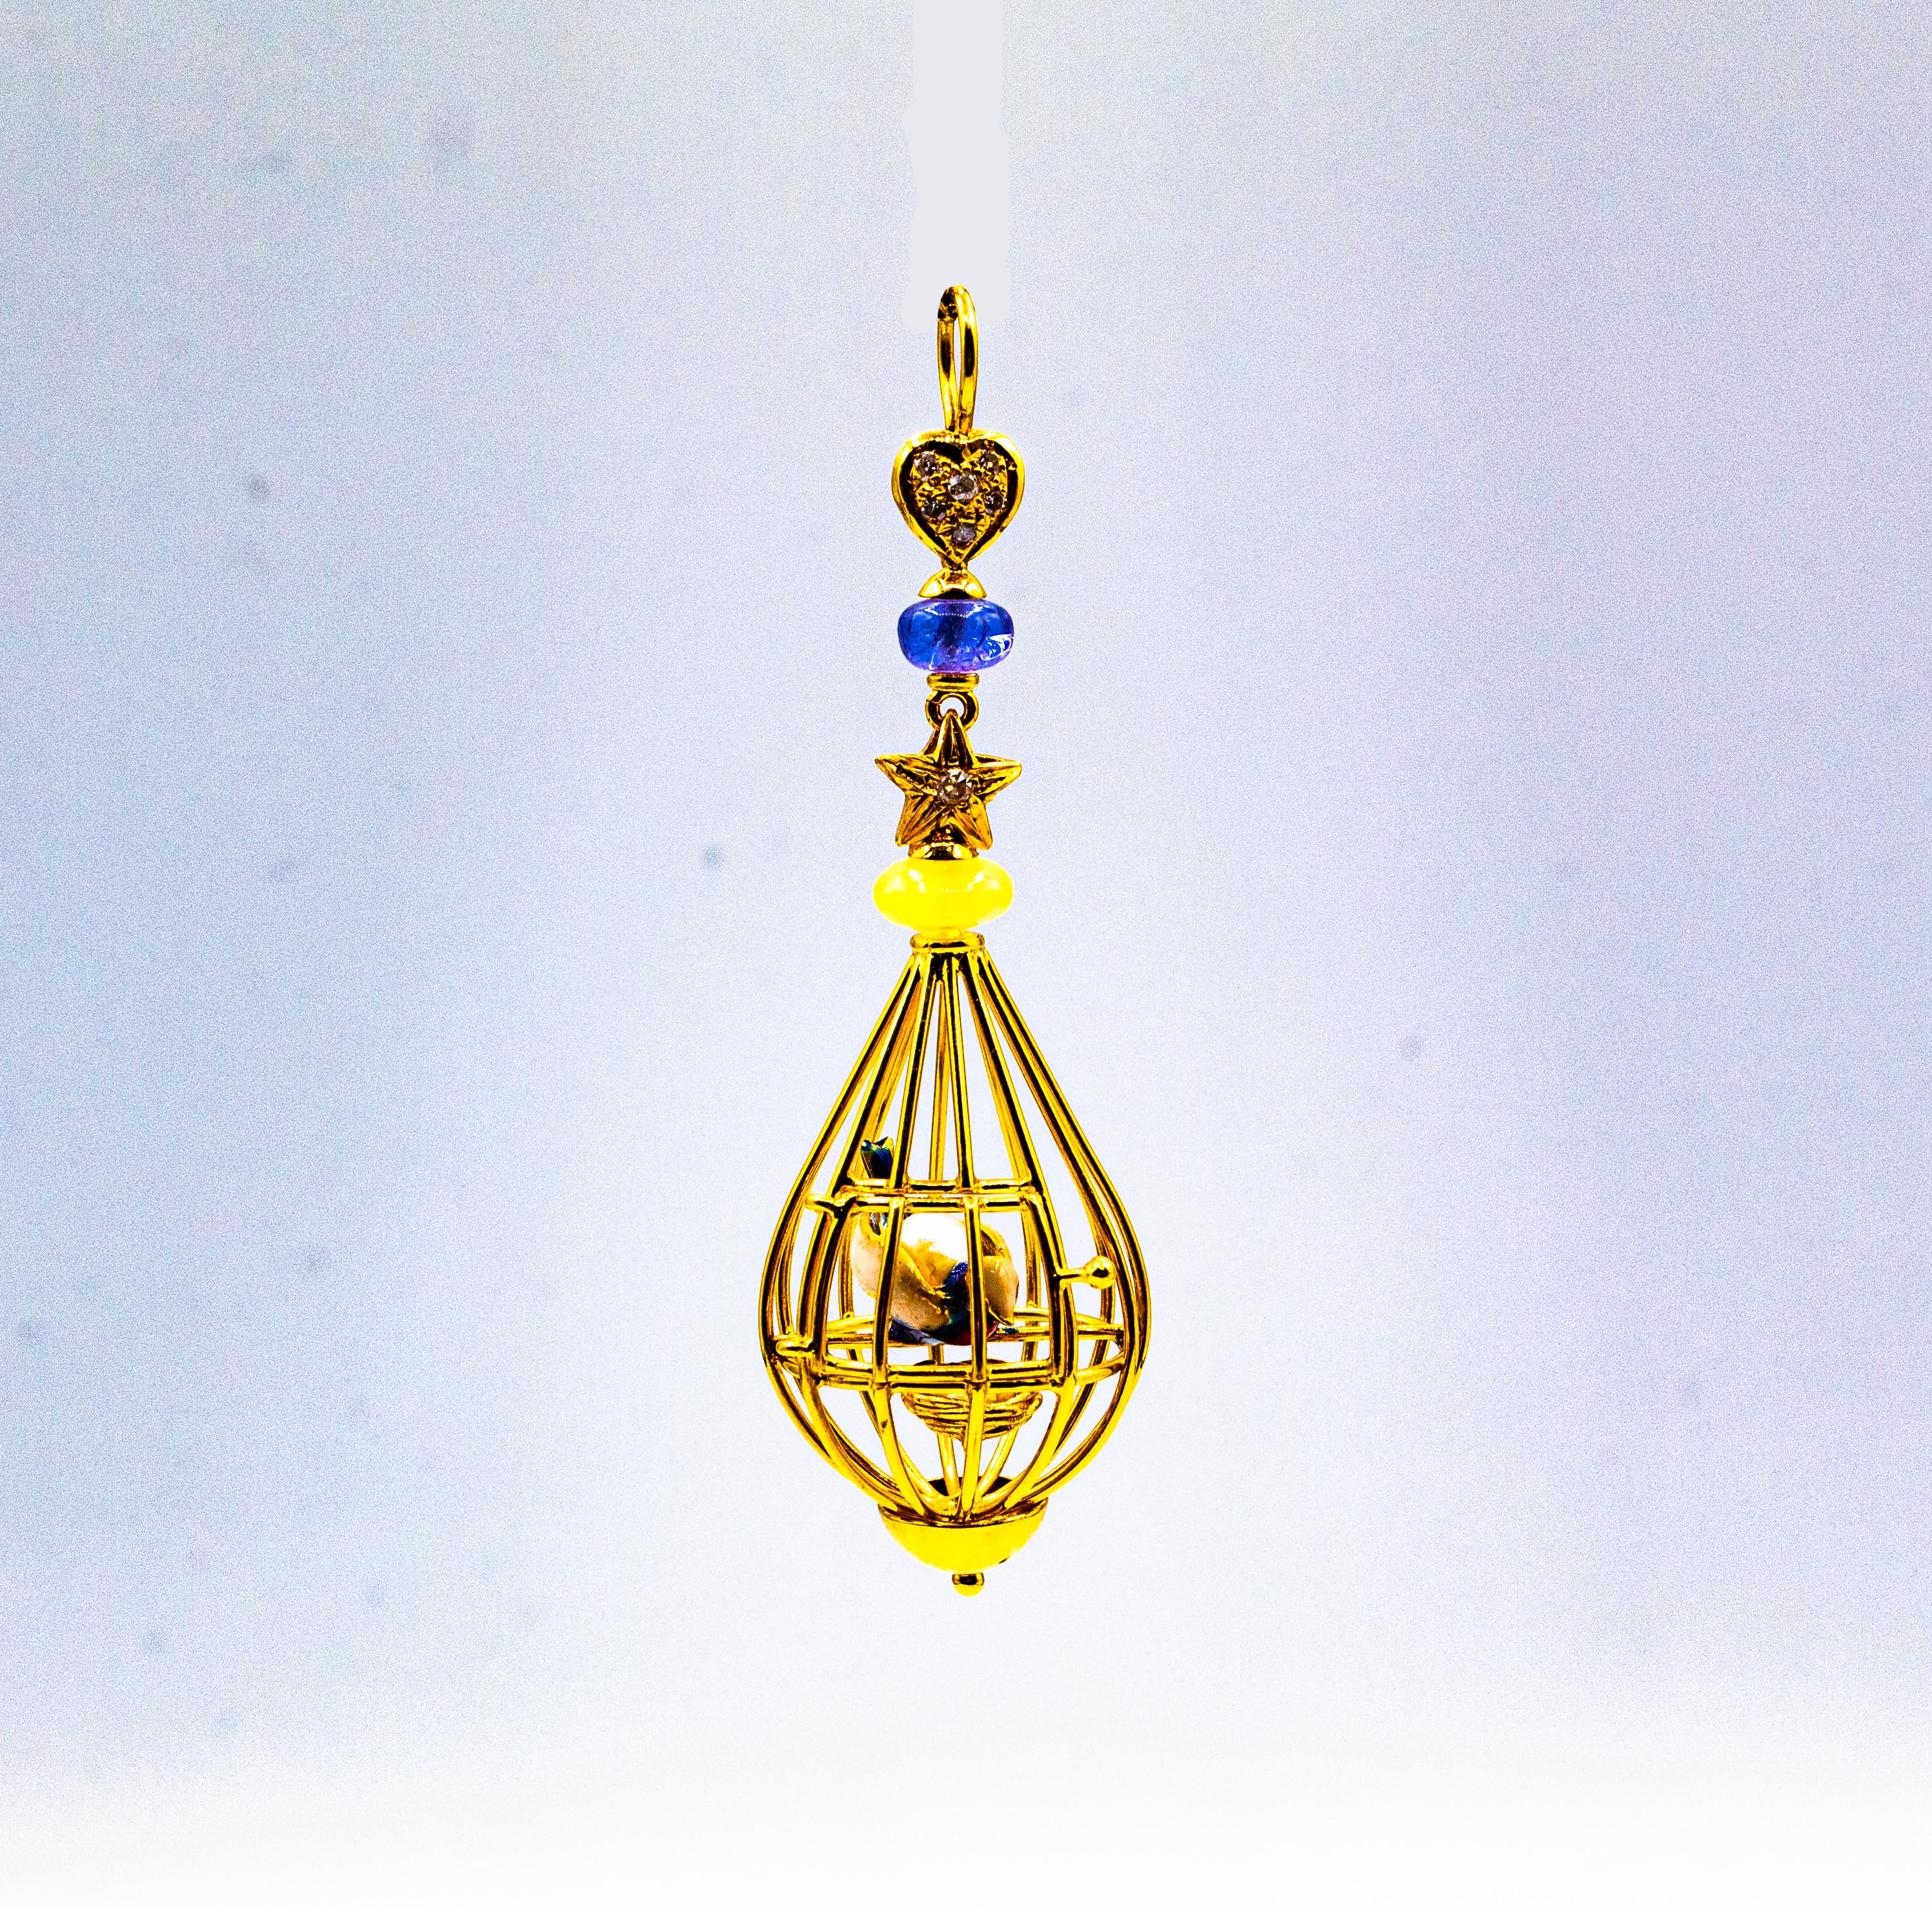 Ce pendentif est fabriqué en or jaune 9K.
Ce pendentif contient 0,10 carat de diamants blancs taille brillant.
Ce pendentif comporte une tanzanite et une opale.
Ce pendentif comporte des perles.
Ce pendentif est en émail.

Ce pendentif est également